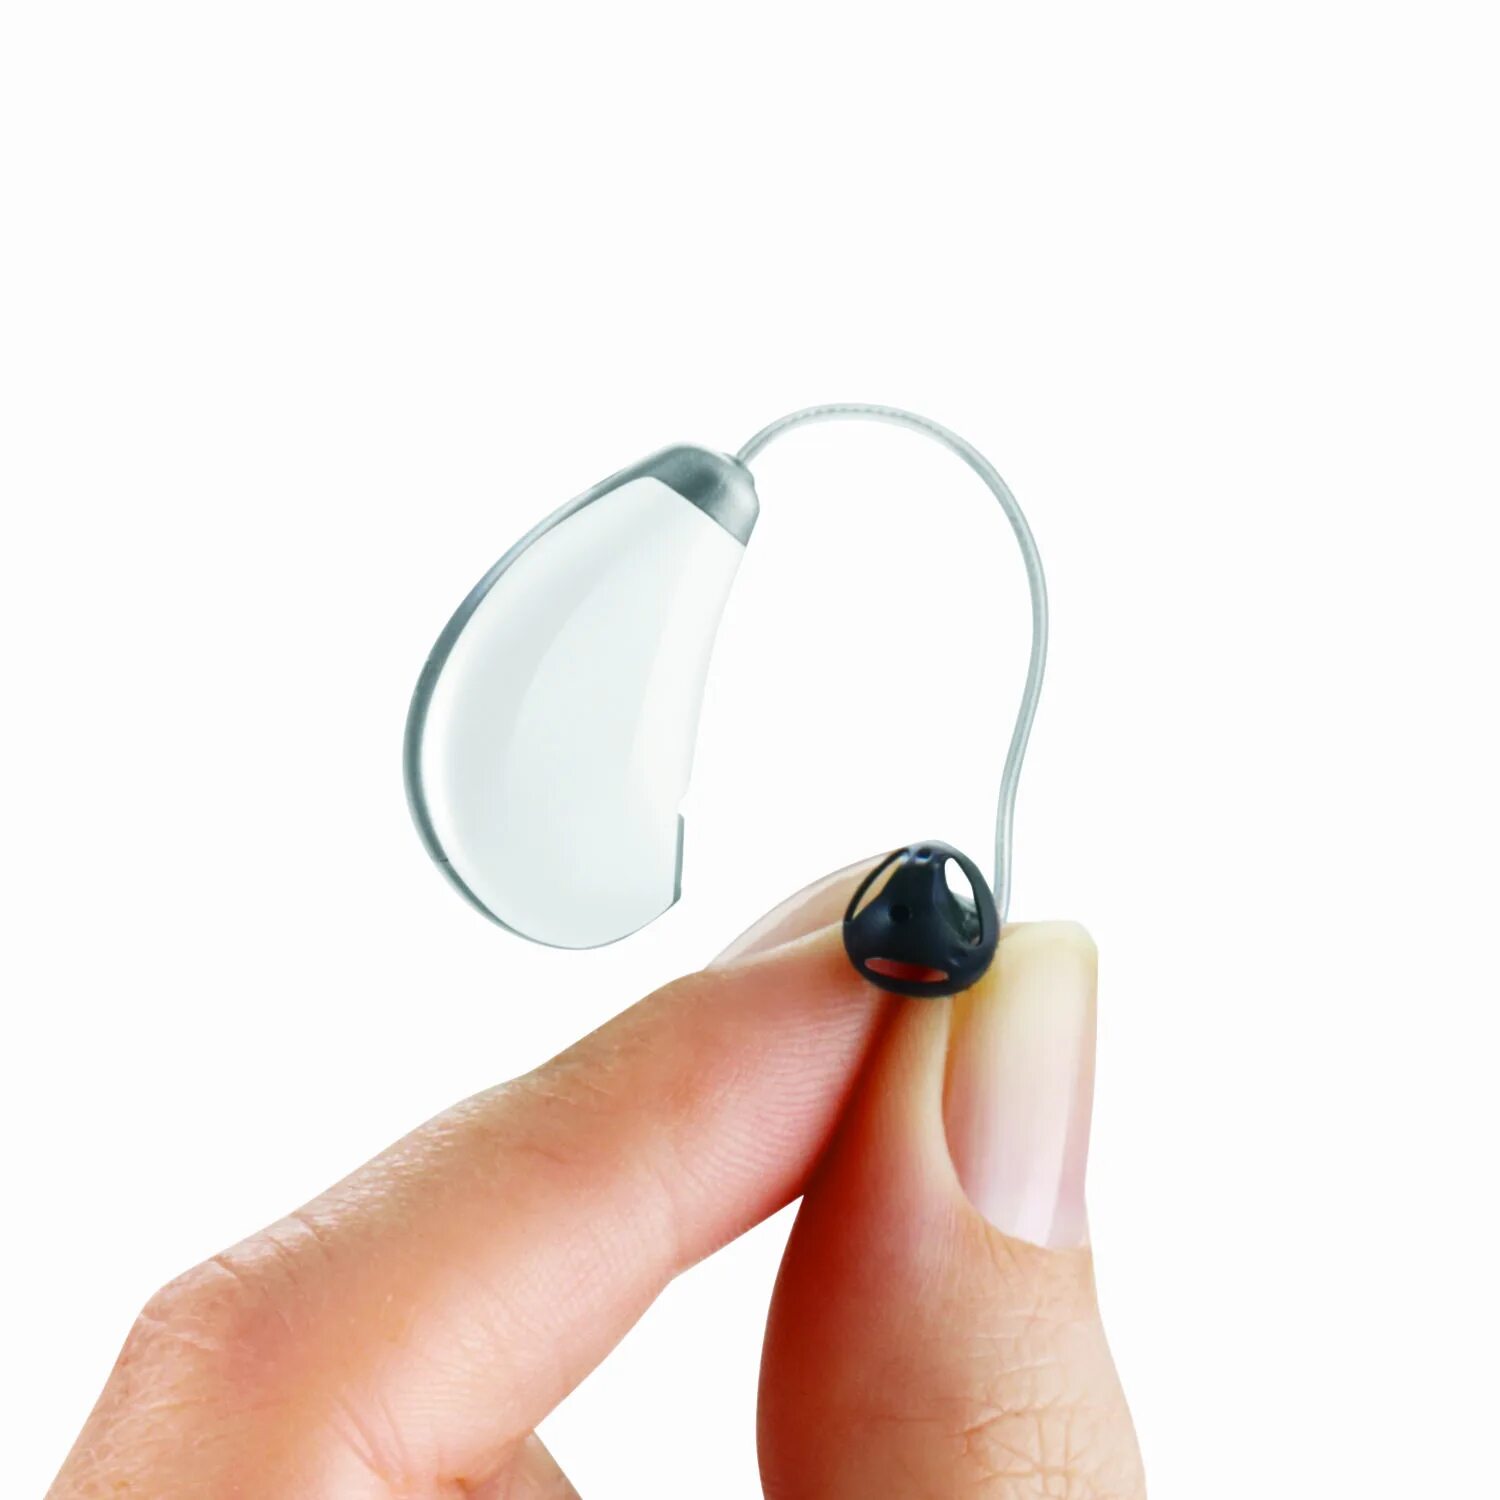 Качественные слуховые аппараты. Внутриканальный слуховой аппарат Widex Mini s 270. Слуховой аппарат Tango 6m. Cros,NFM c090 слуховой аппарат. Слуховой аппарат Pure 2px.